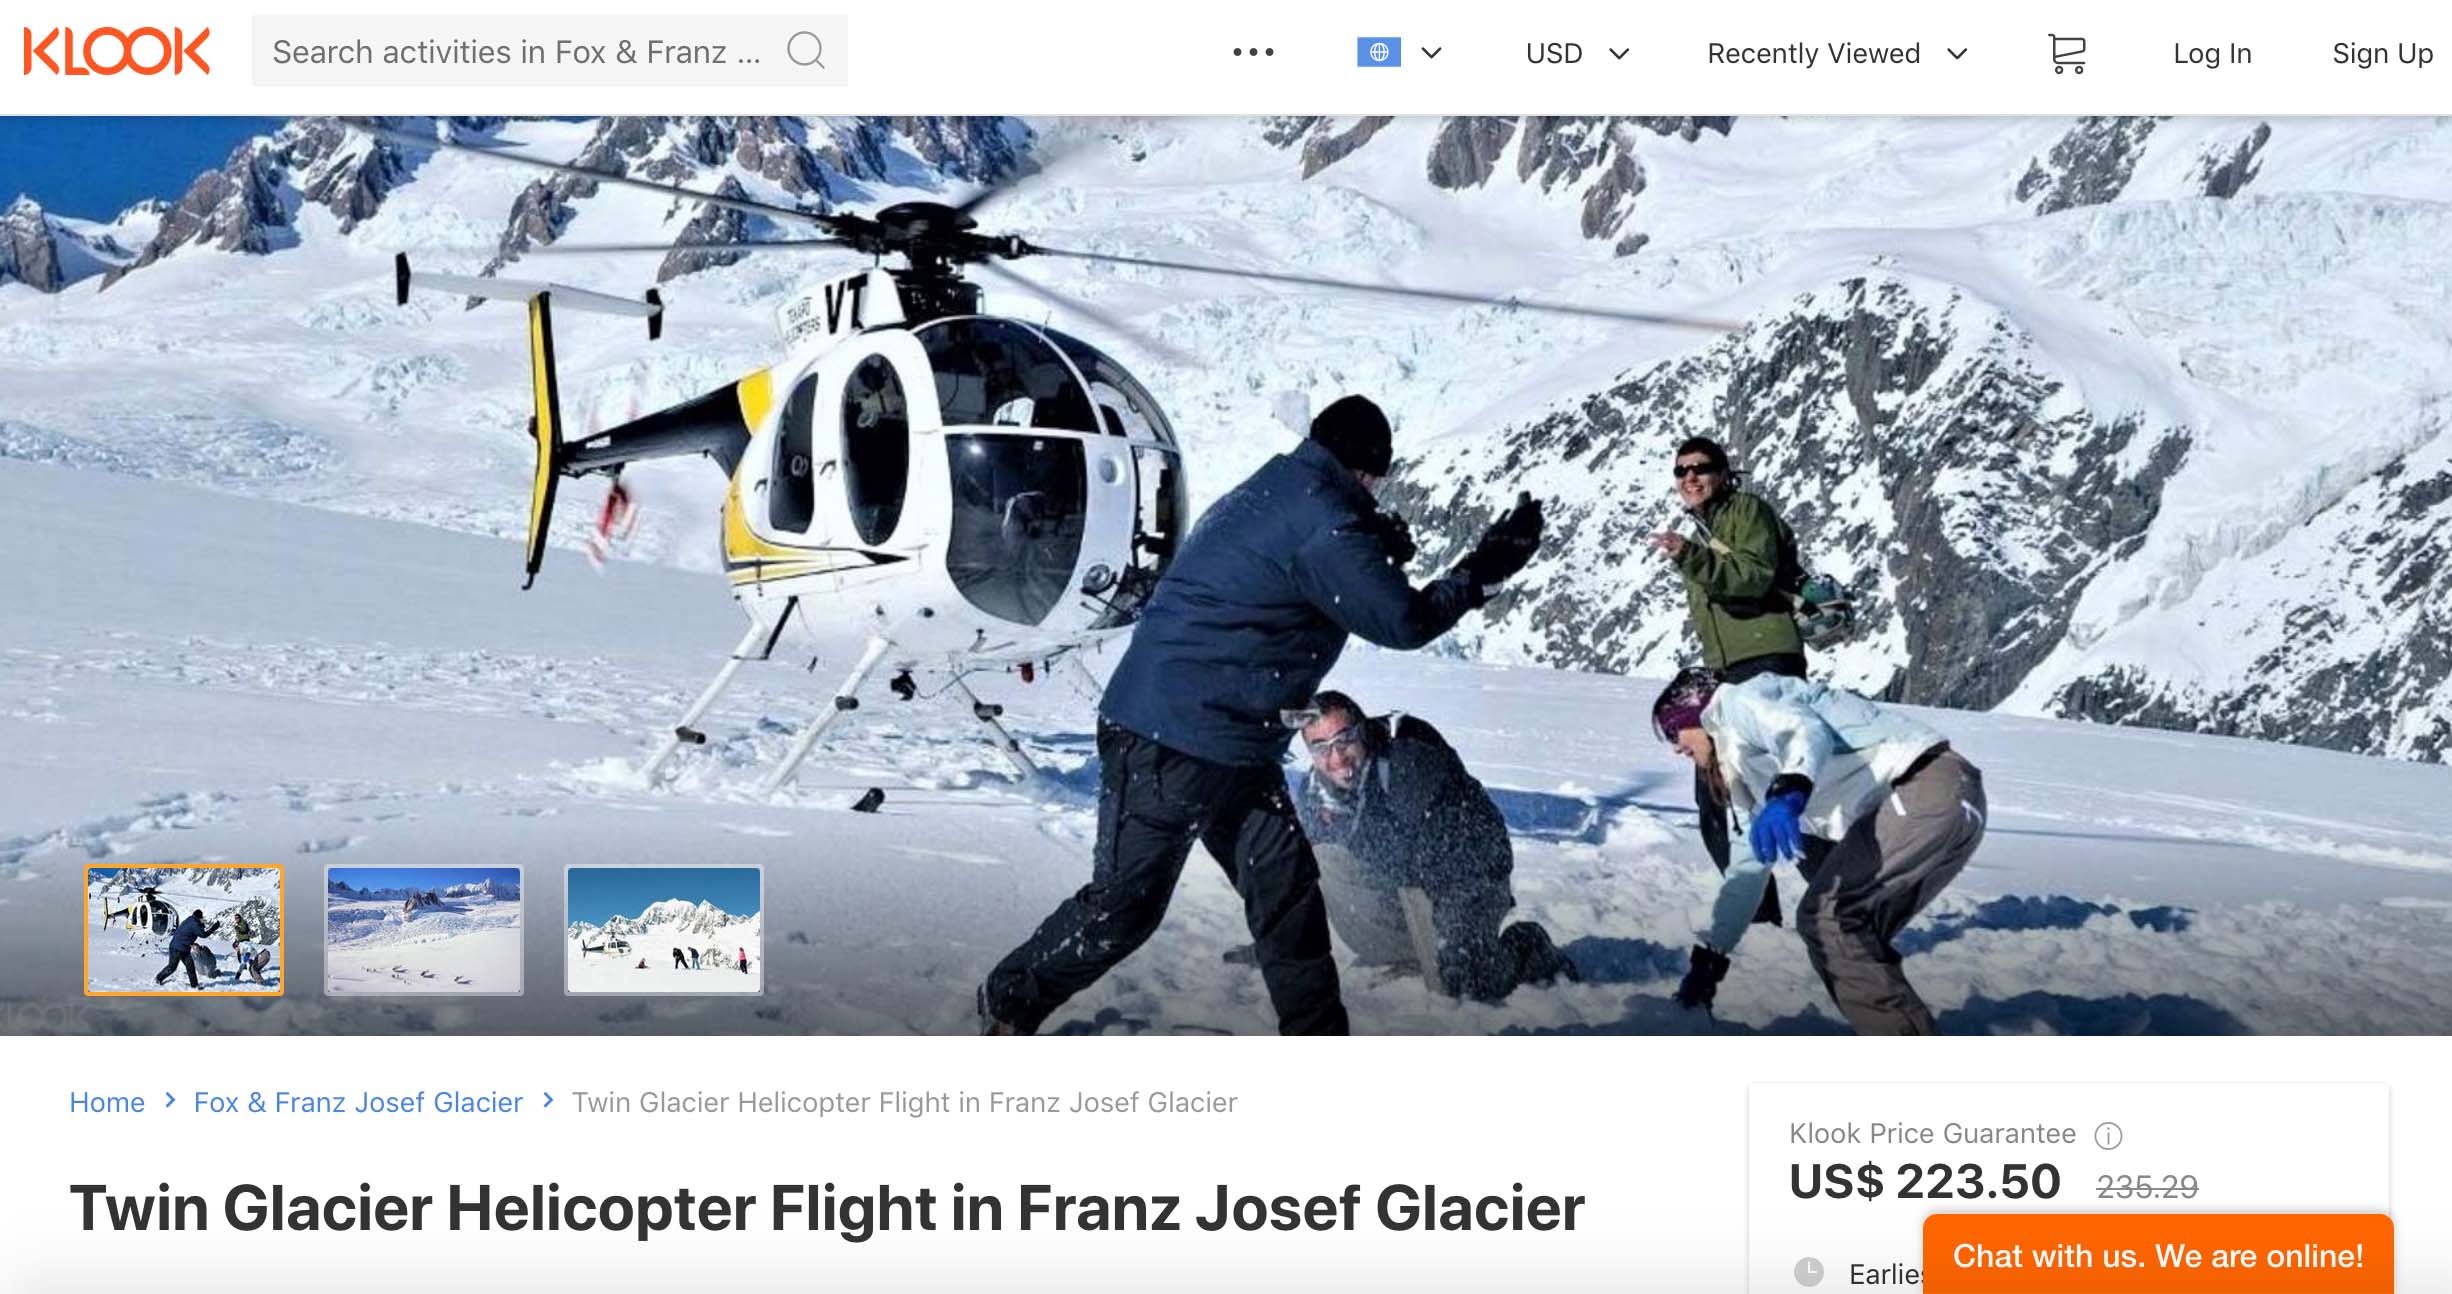 เที่ยวนิวซีแลนด์ รีวิว Glacier review helicopter new zealand klook